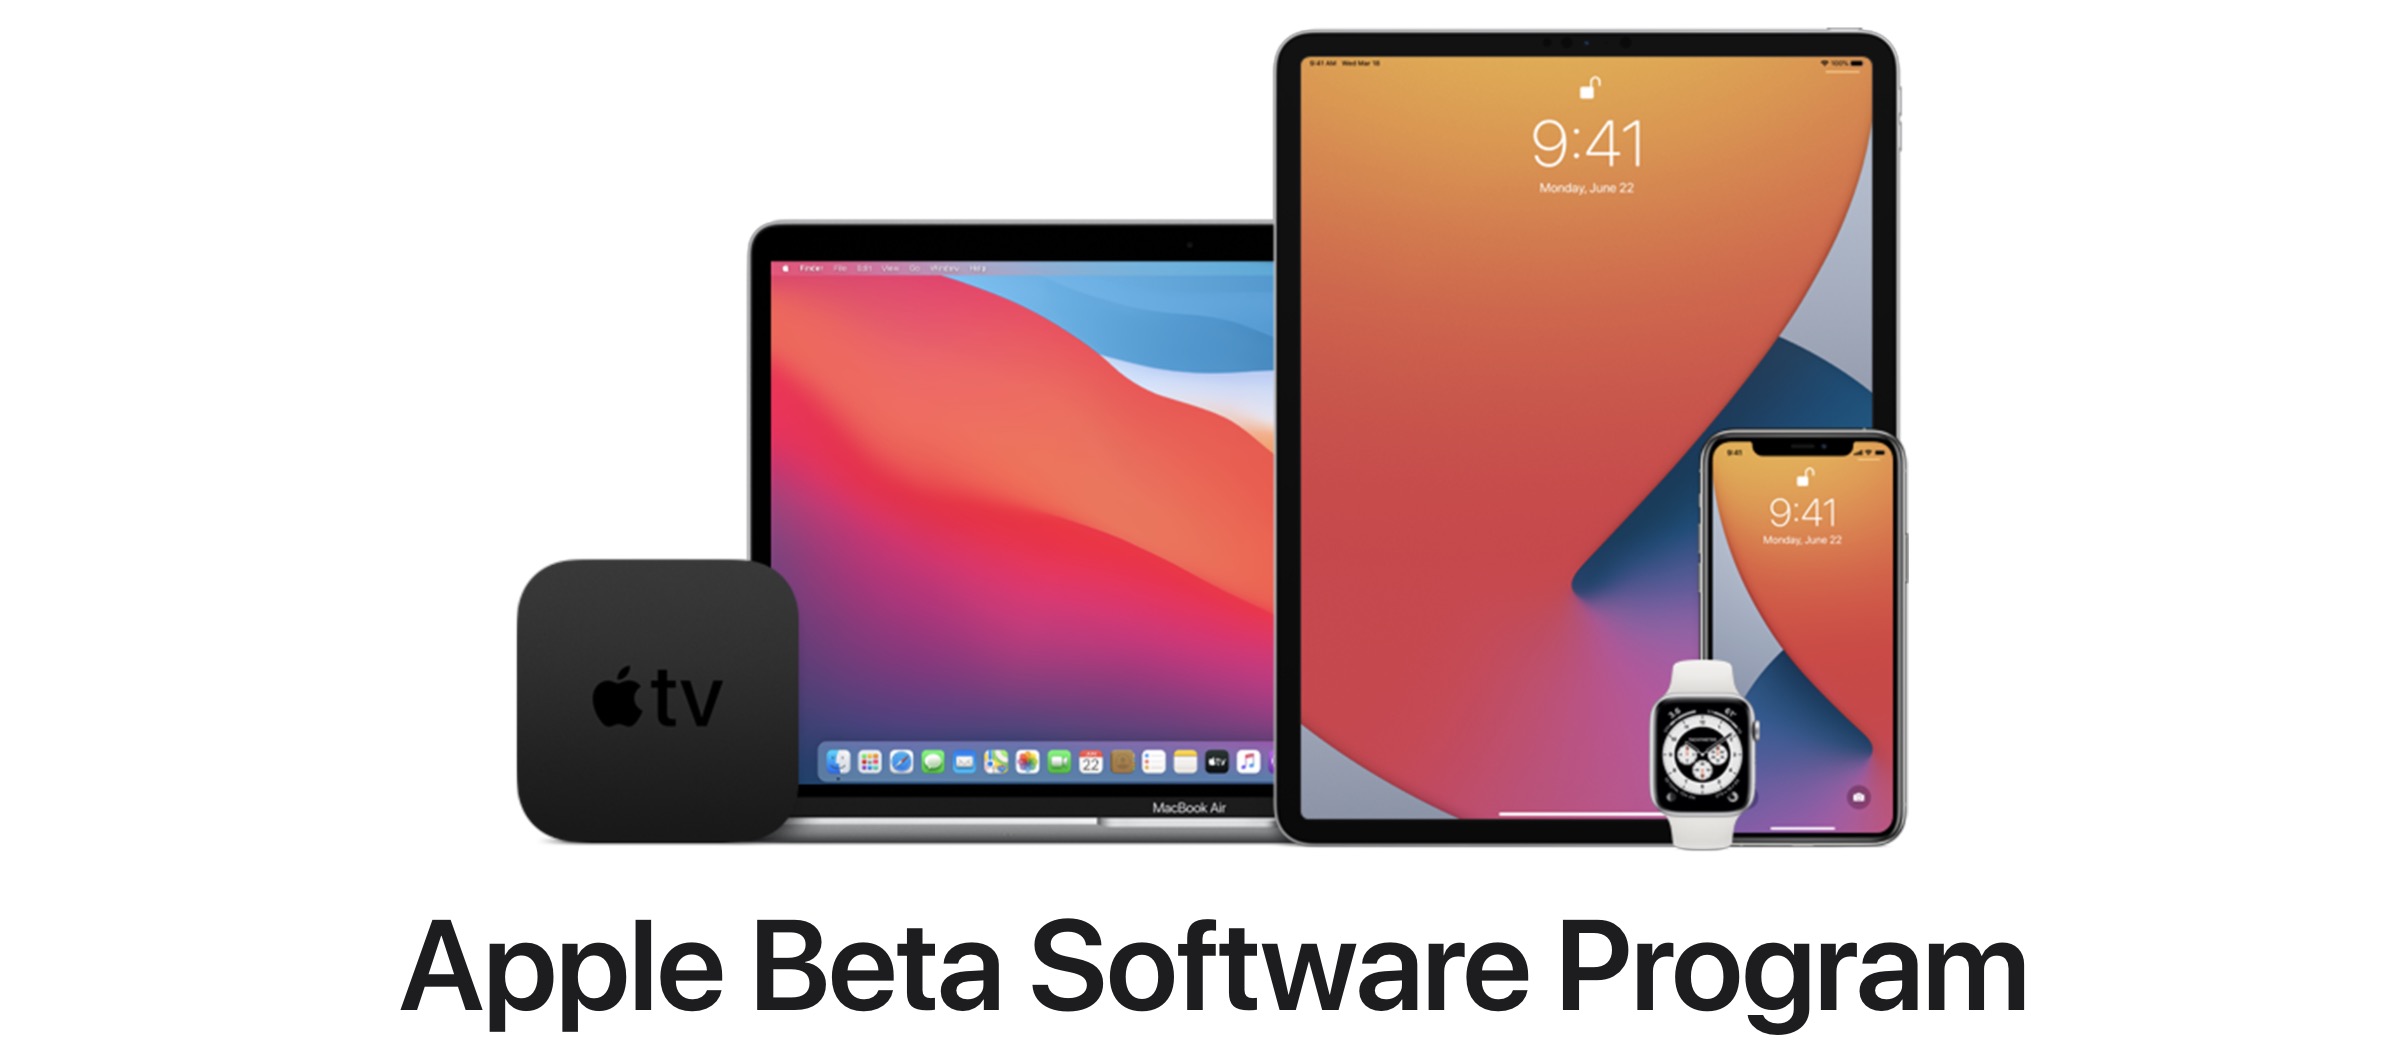 Apple lança beta público do iOS 14, iPadOS 14 e outros sistemas